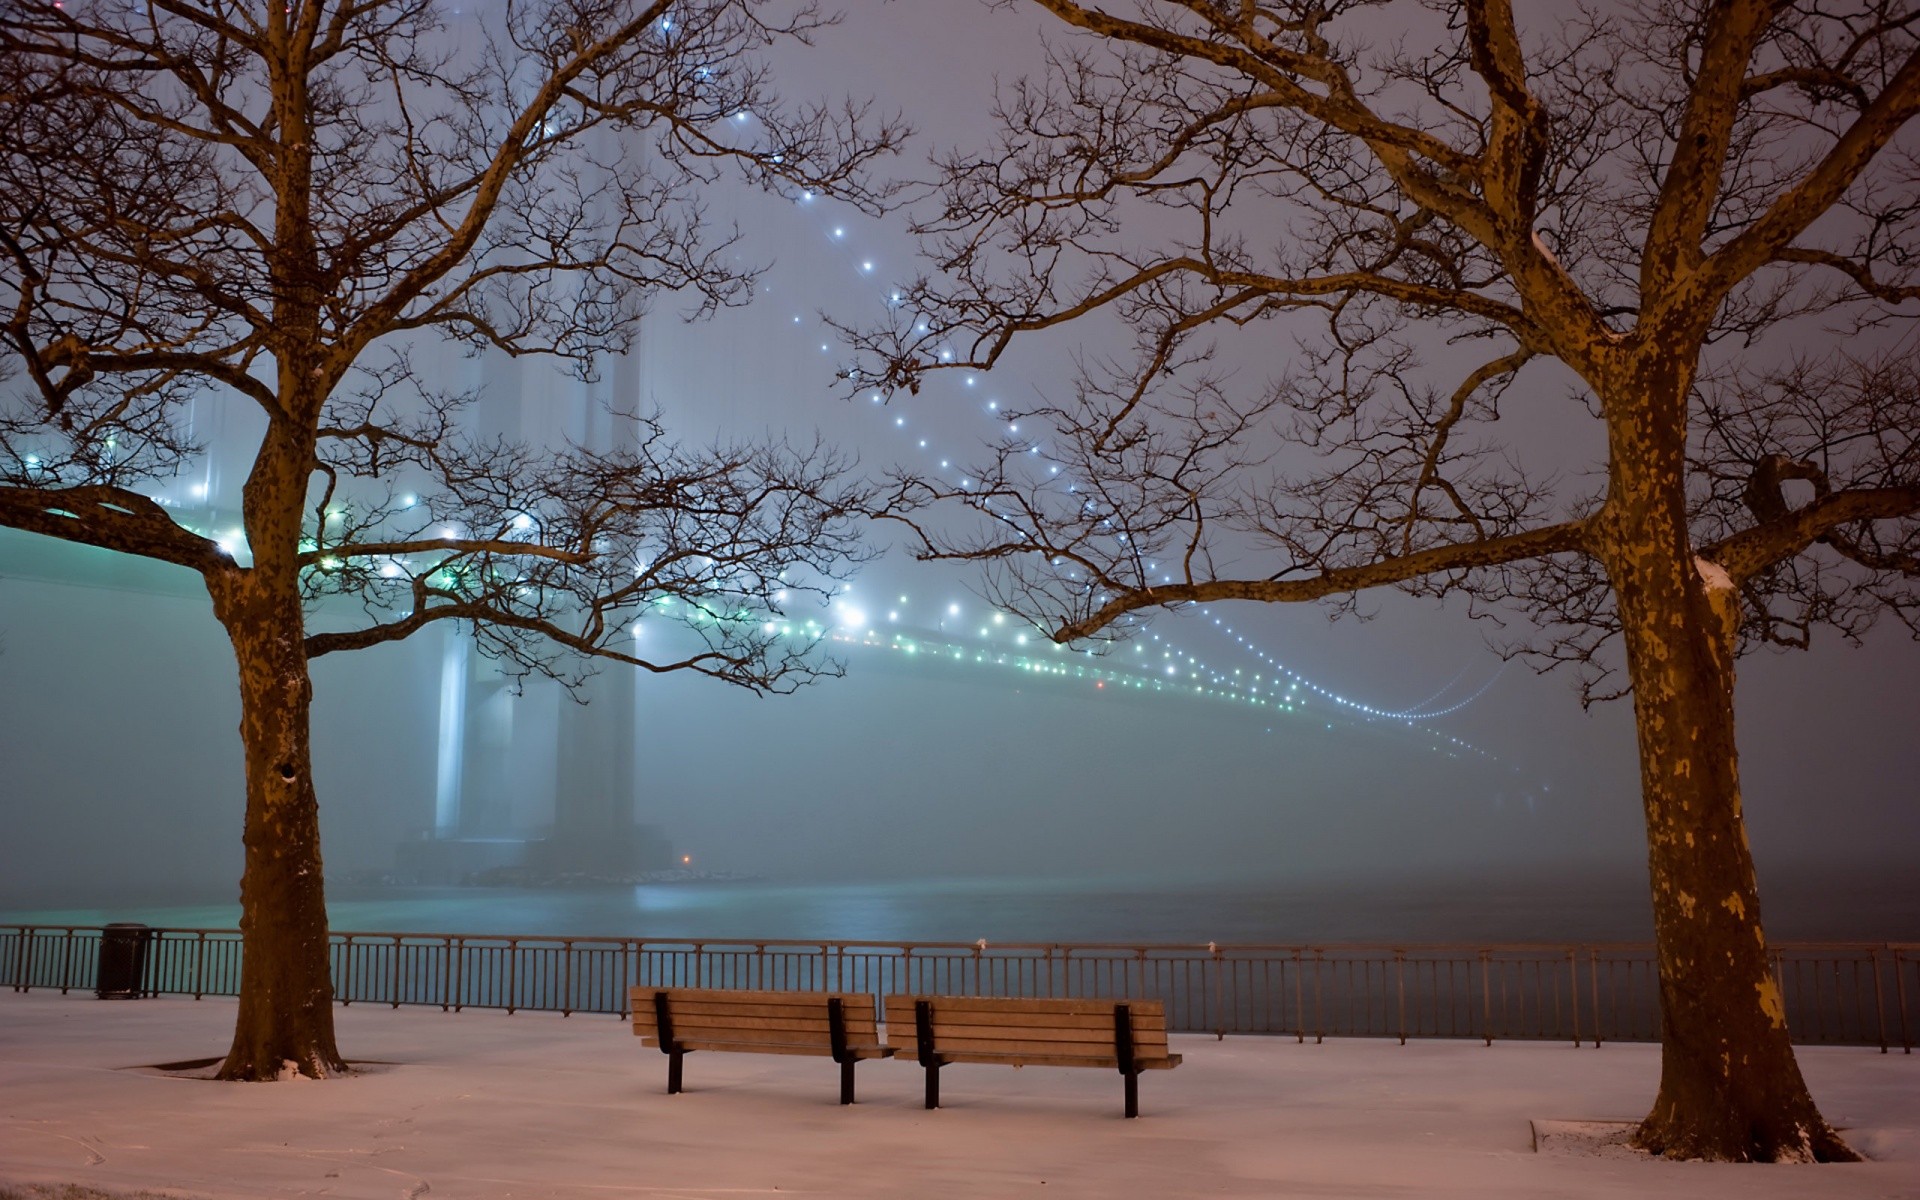 Winter bridge photo